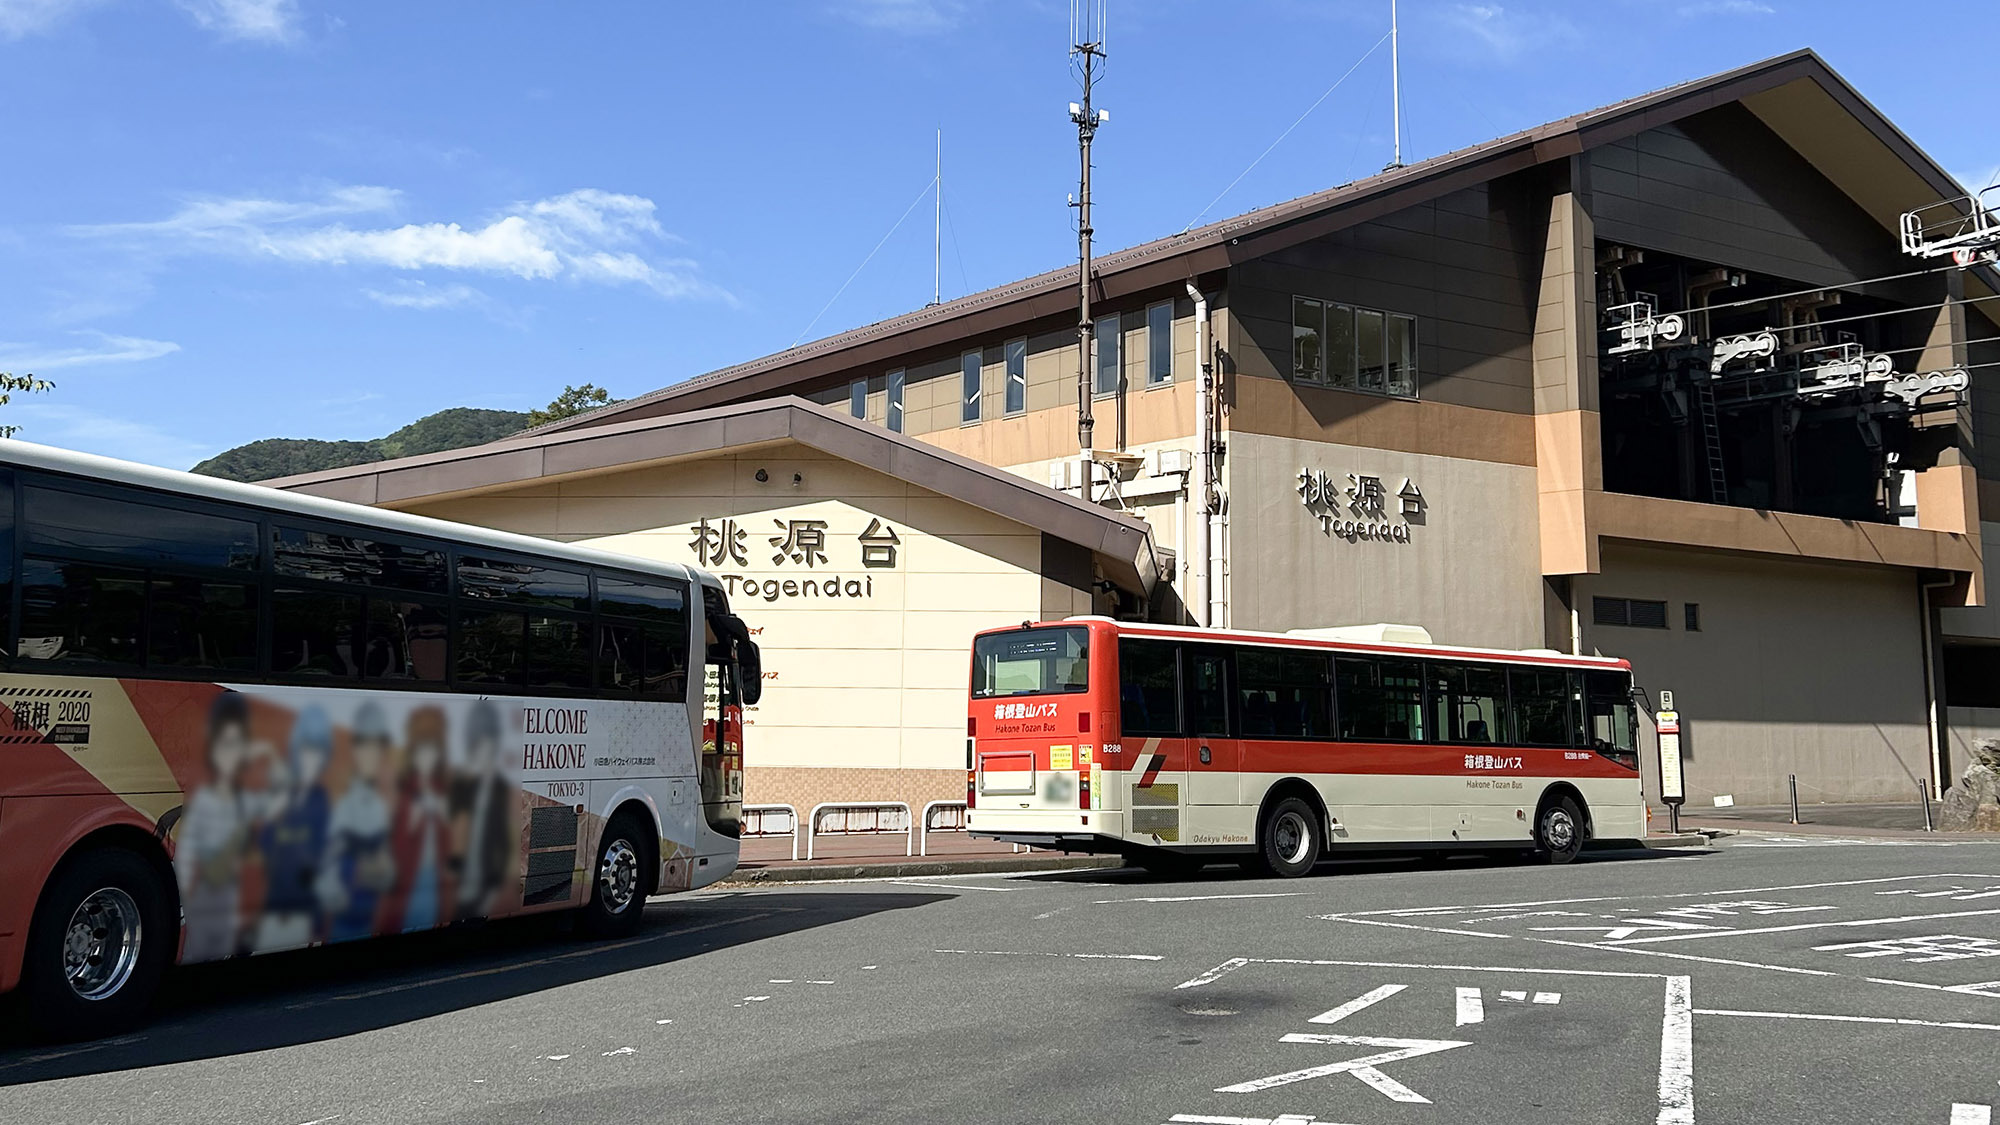 ・【桃源台駅】当施設から徒歩で約8分。箱根登山バスや小田急箱根高速バスの停留所もございます